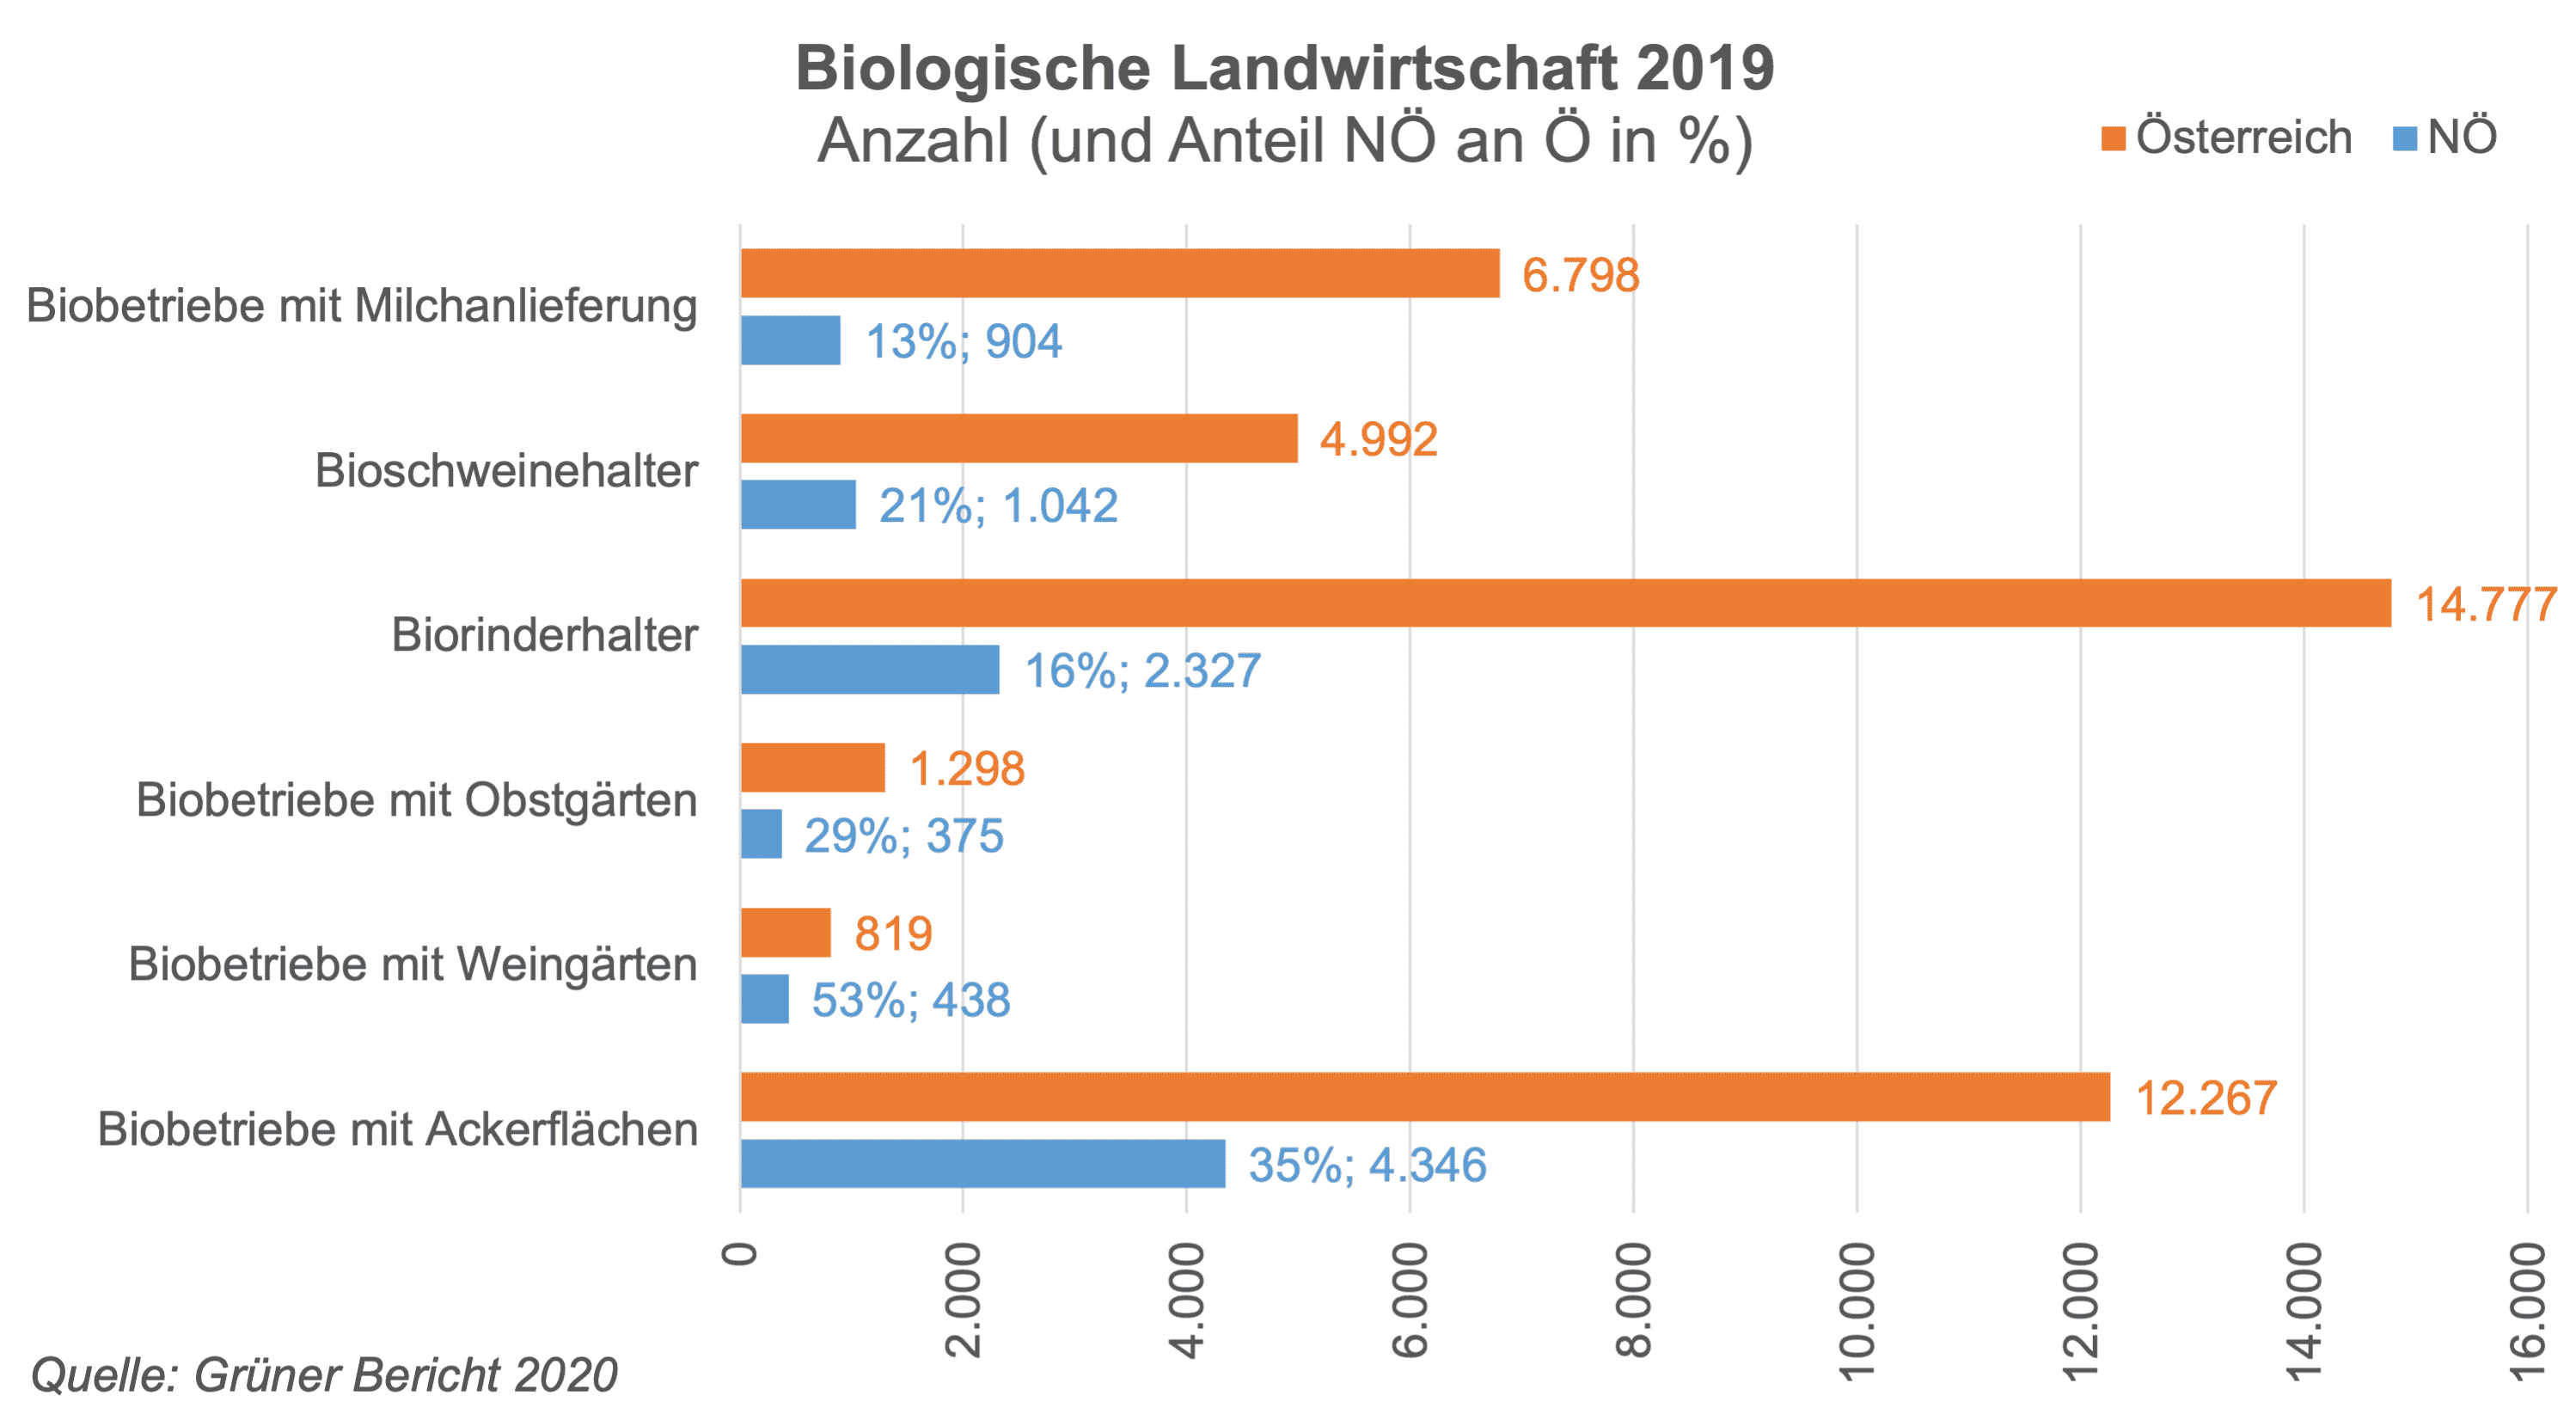 2019 erfasste die INVEKOS-Datenbank (geförderte Betriebe) 24.225 Bio-Betriebe mit einer Fläche von 670.000 ha LF (inkl. biologisch bewirtschaftete Almen). Der Anteil der Bio-Betriebe an allen INVEKOSBetrieben stieg damit auf 22,1 % an. Die Bio-Betriebe bewirtschaften 26,1 % der landwirtschaftlich genutzten Flächen. Die Zahl der Bio-Betriebe hat gegenüber dem Vorjahr um 747 Betriebe bzw. 3 % zugenommen. Den höchsten Anteil an Bio-Betrieben gibt es in Salzburg (49 %), Wien (27 %) sowie im Burgenland (26 %). Besonders in Niederösterreich und im Burgenland stieg die Bio-Fläche – aufgrund der deutlichen Zunahme der Bio-Ackerfläche – signifikant.